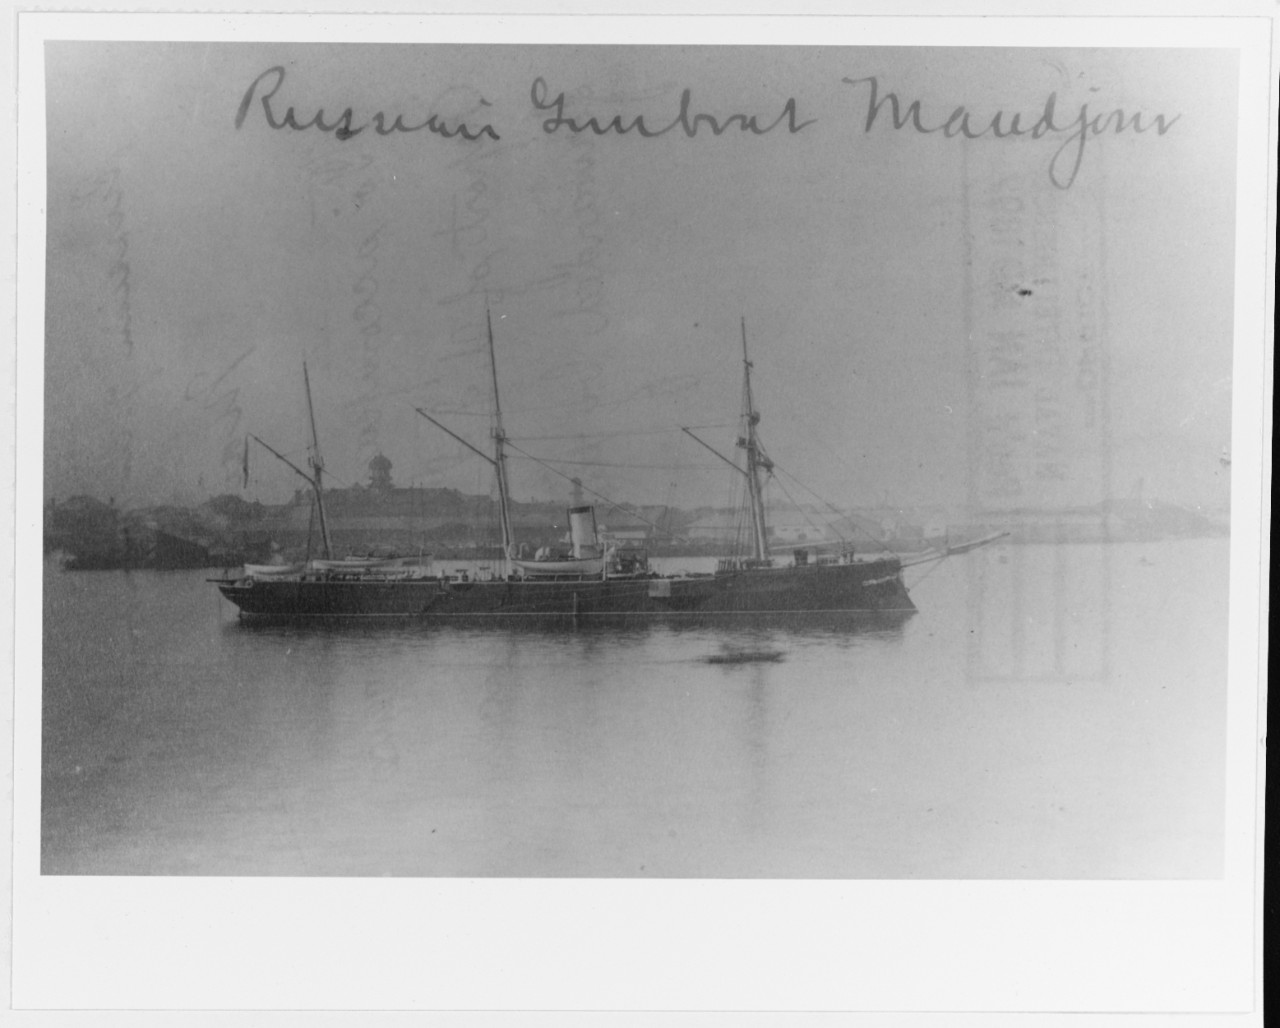 MANDJOUR (Russian gunboat, 1886-1922)